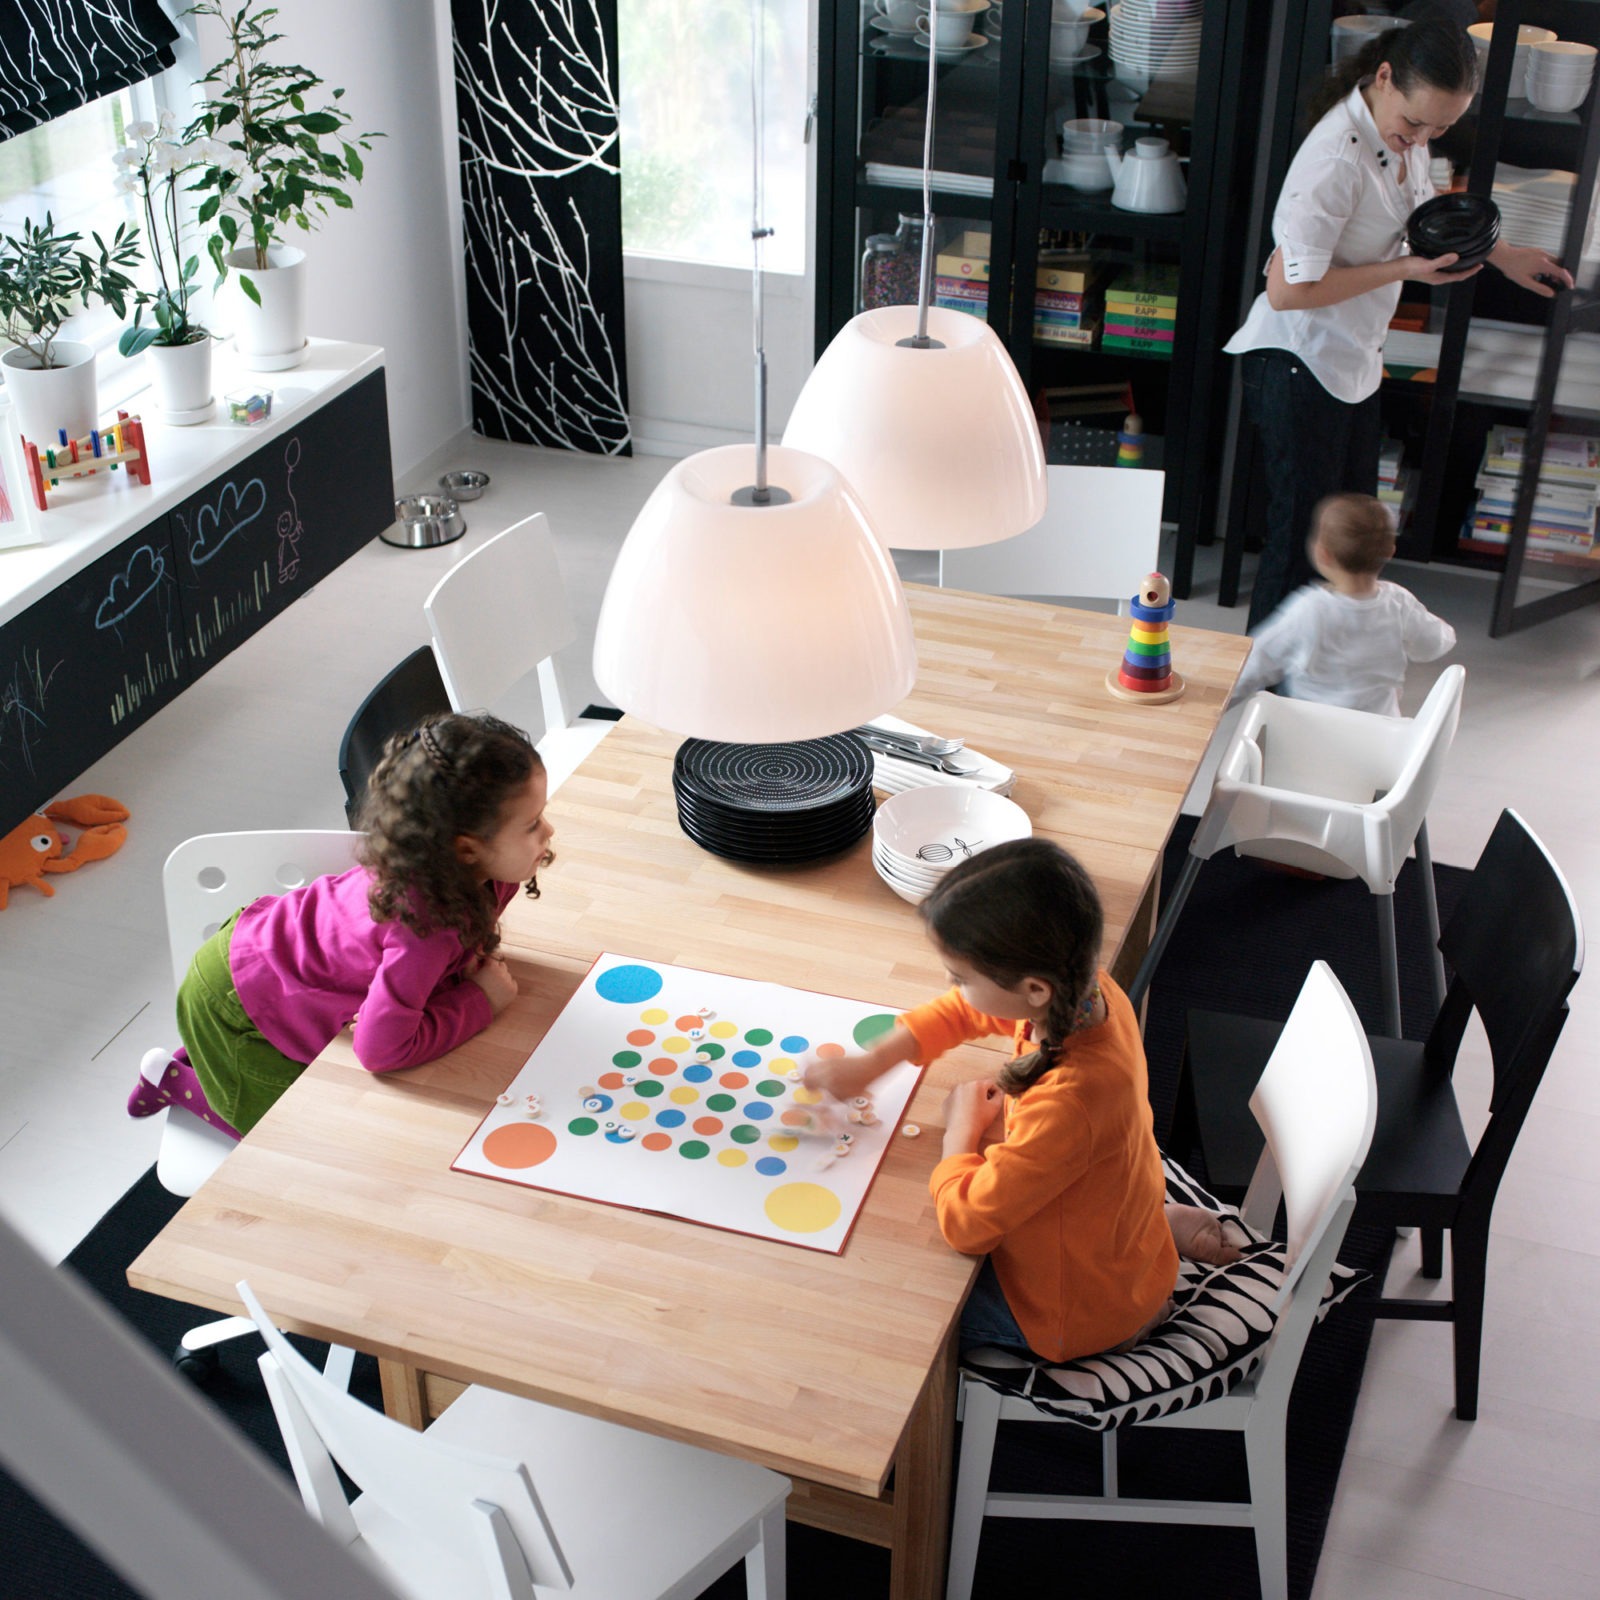 Frau und drei Kinder in einem Raum mit Esstisch aus hellem Holz. Schwarz-weißes Farbkonzept. Zwei Kinder spielen Brettspiel.